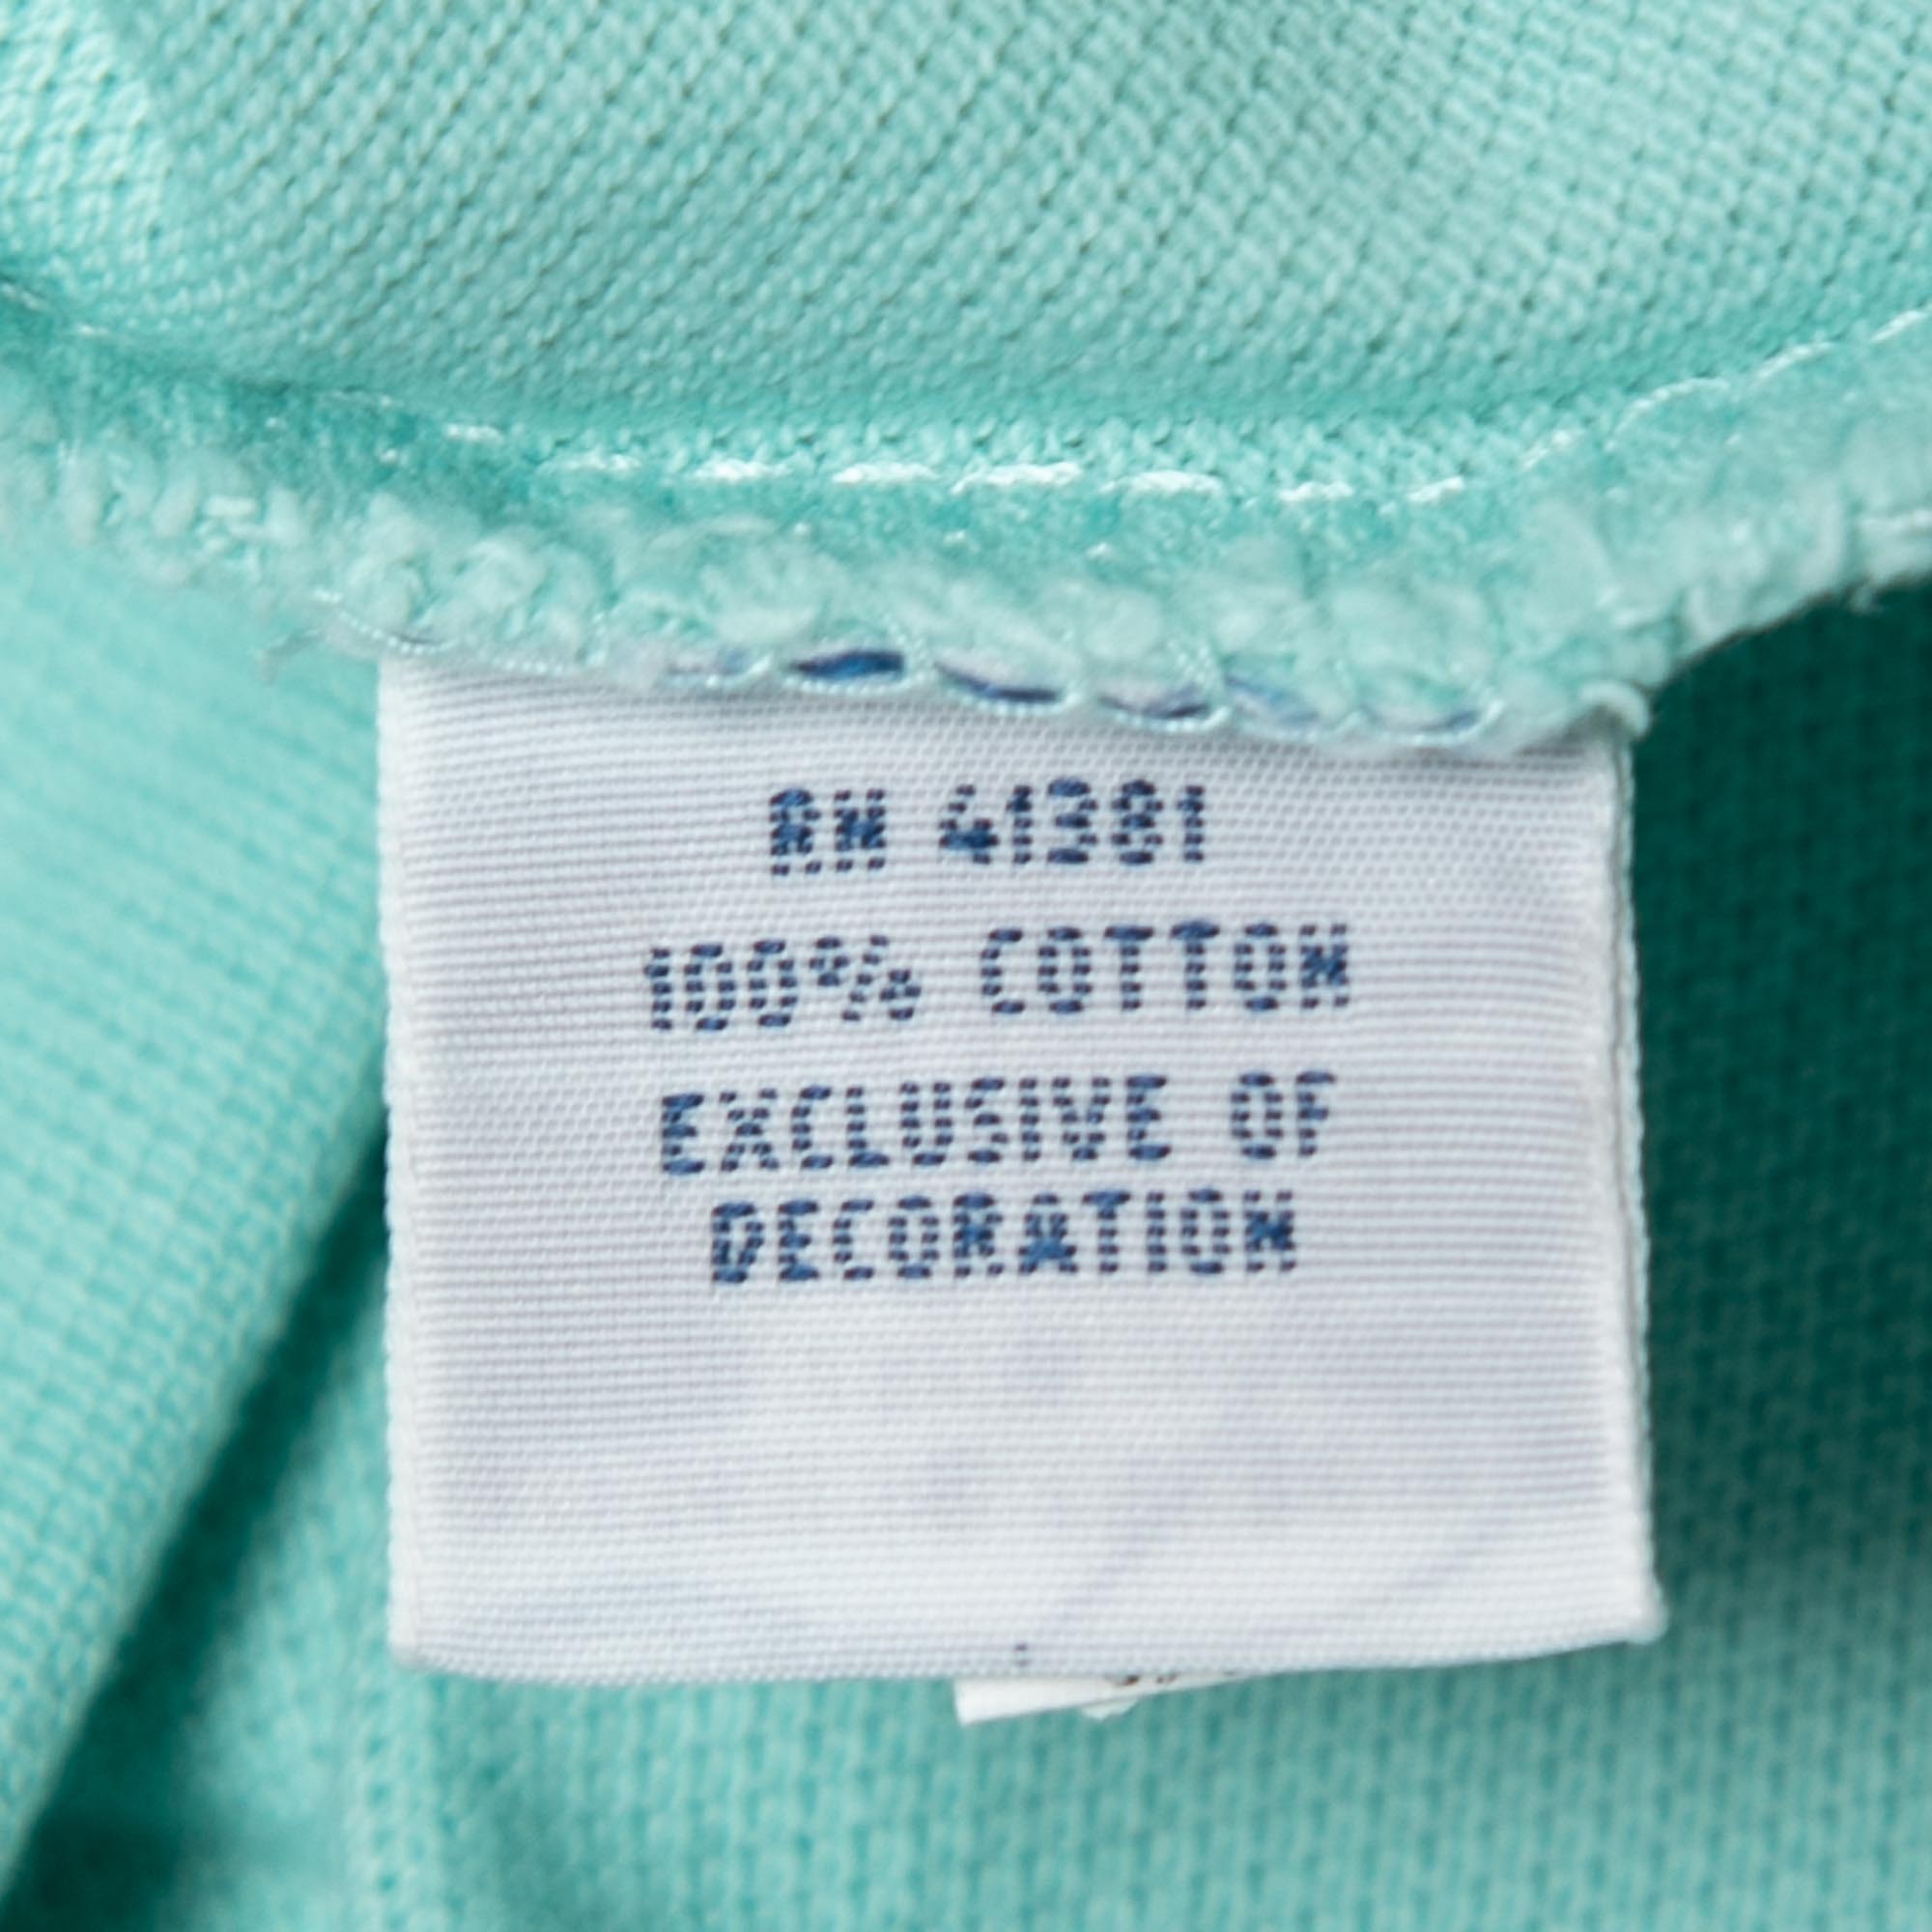 Polo Ralph Lauren Light Blue Cotton Pique Classic Fit Polo T-Shirt S